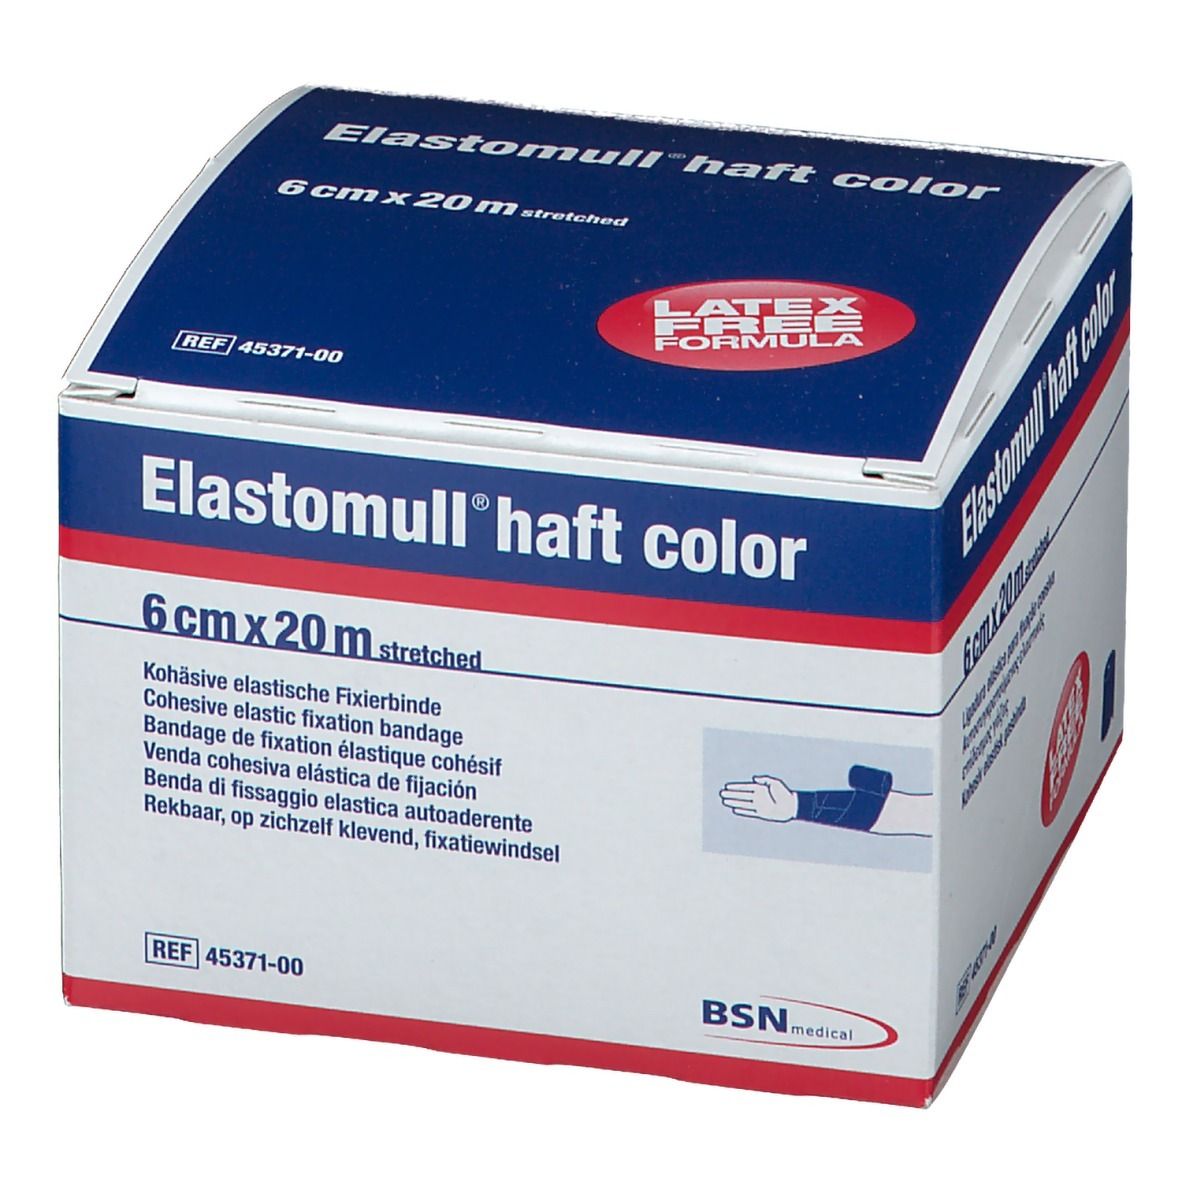 Elastomull® haft color 6 cm x 20 m blau